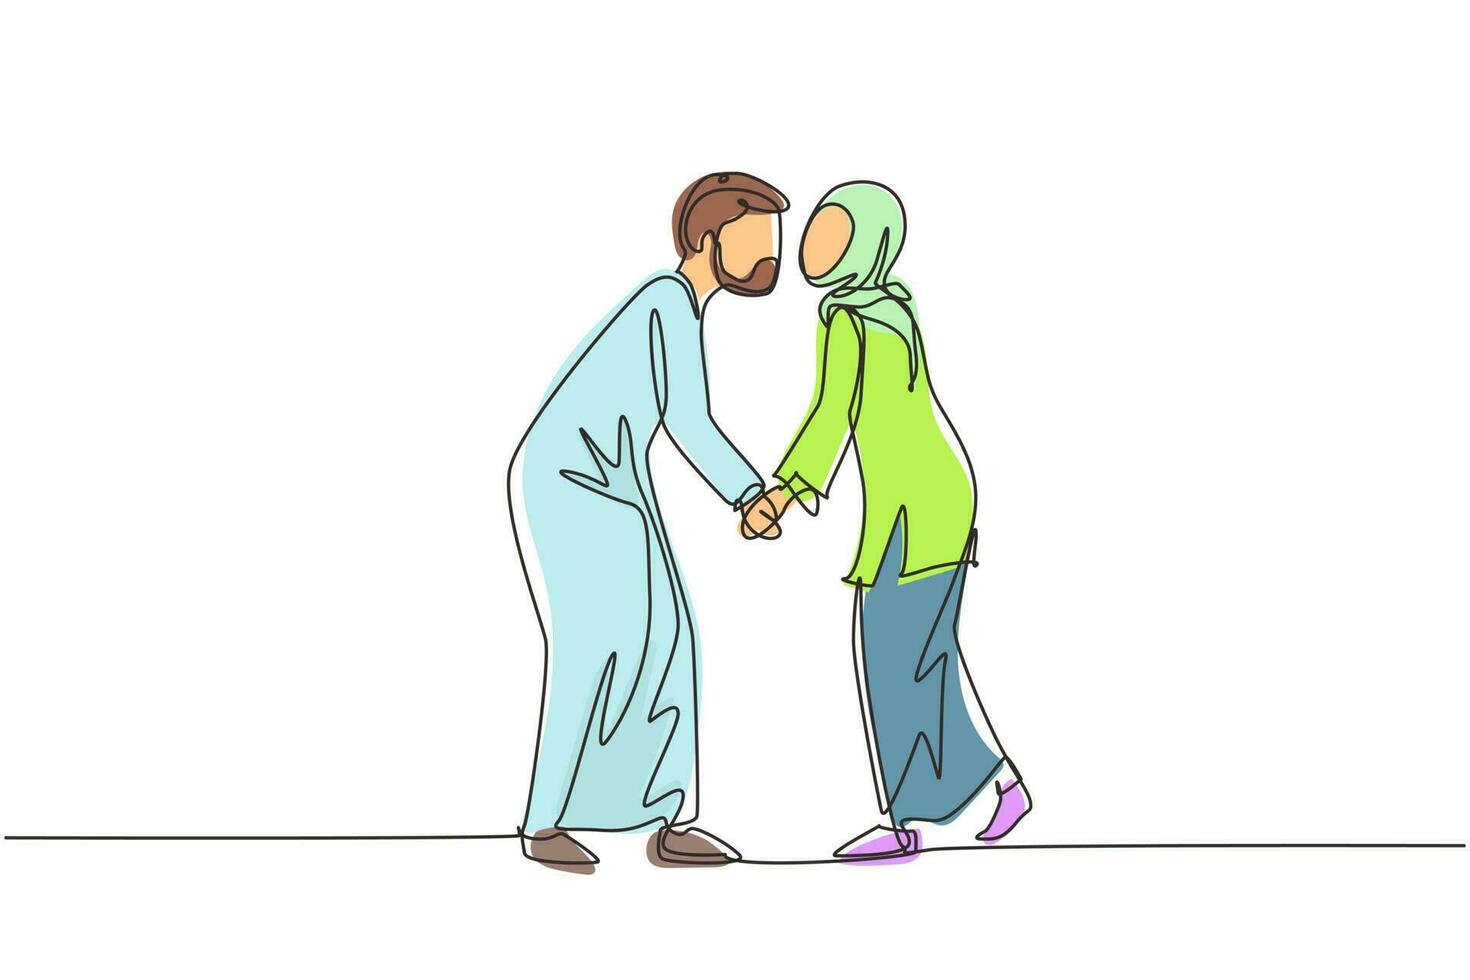 dibujo de una sola línea continua romántico de una pareja árabe masculina y femenina con los labios encerrados en un beso. feliz linda pareja amantes besándose y tomándose de la mano. ilustración de vector de diseño gráfico de dibujo de una línea